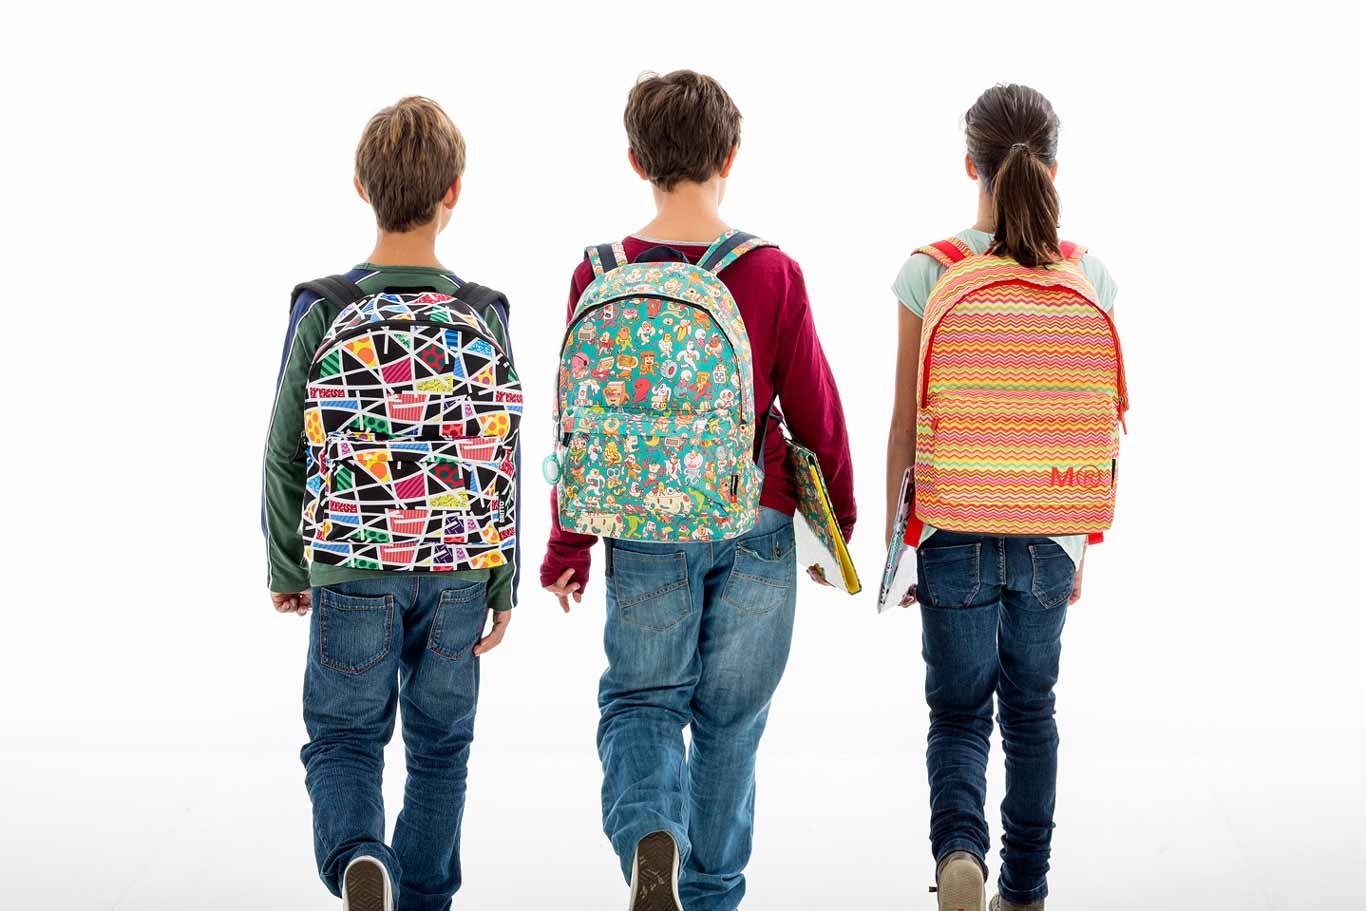 Cómo elegir una mochila adecuada para tus hijos? 